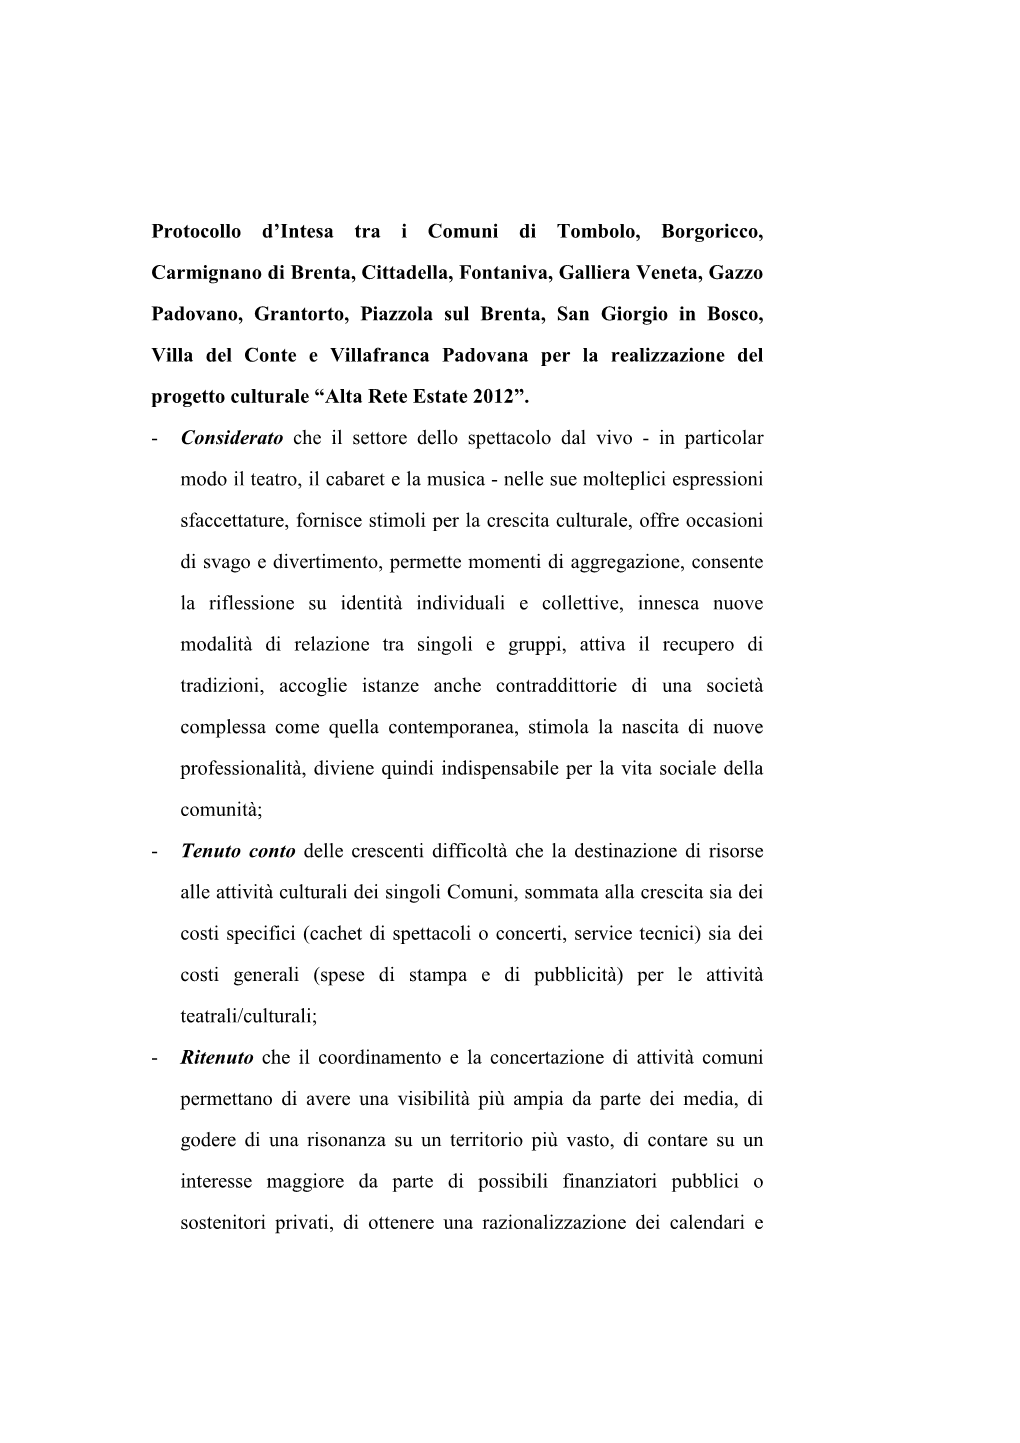 Protocollo D'intesa Tra I Comuni Di Tombolo, Borgoricco, Carmignano